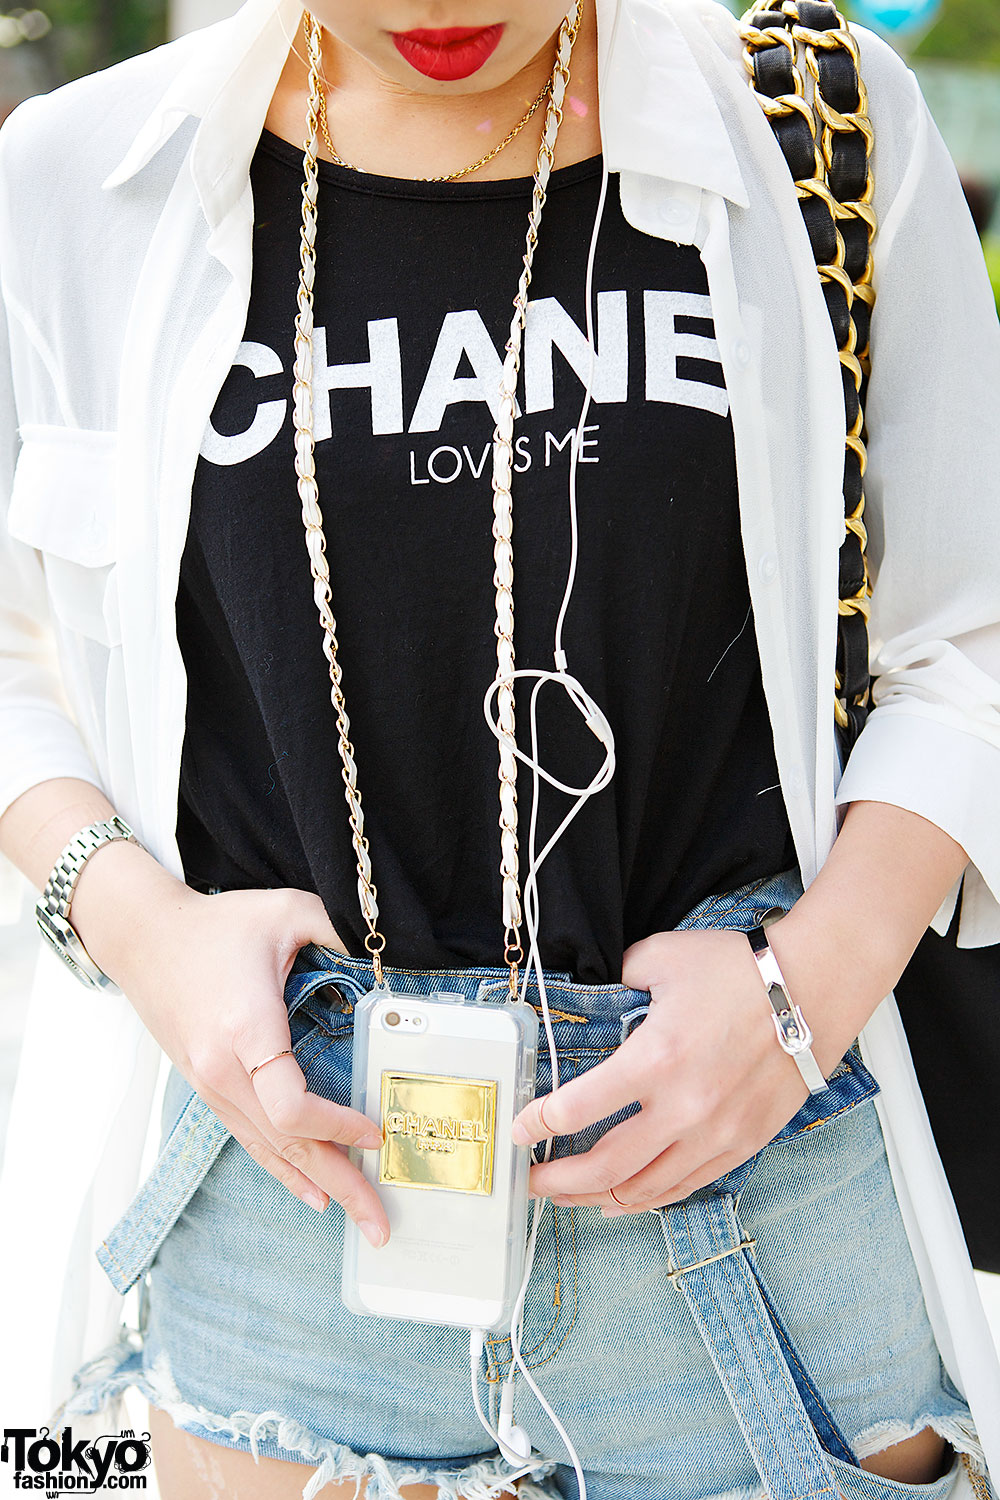 Chanel Loves Me” T-Shirt, Sheer Top & Cutout Platforms in Harajuku 